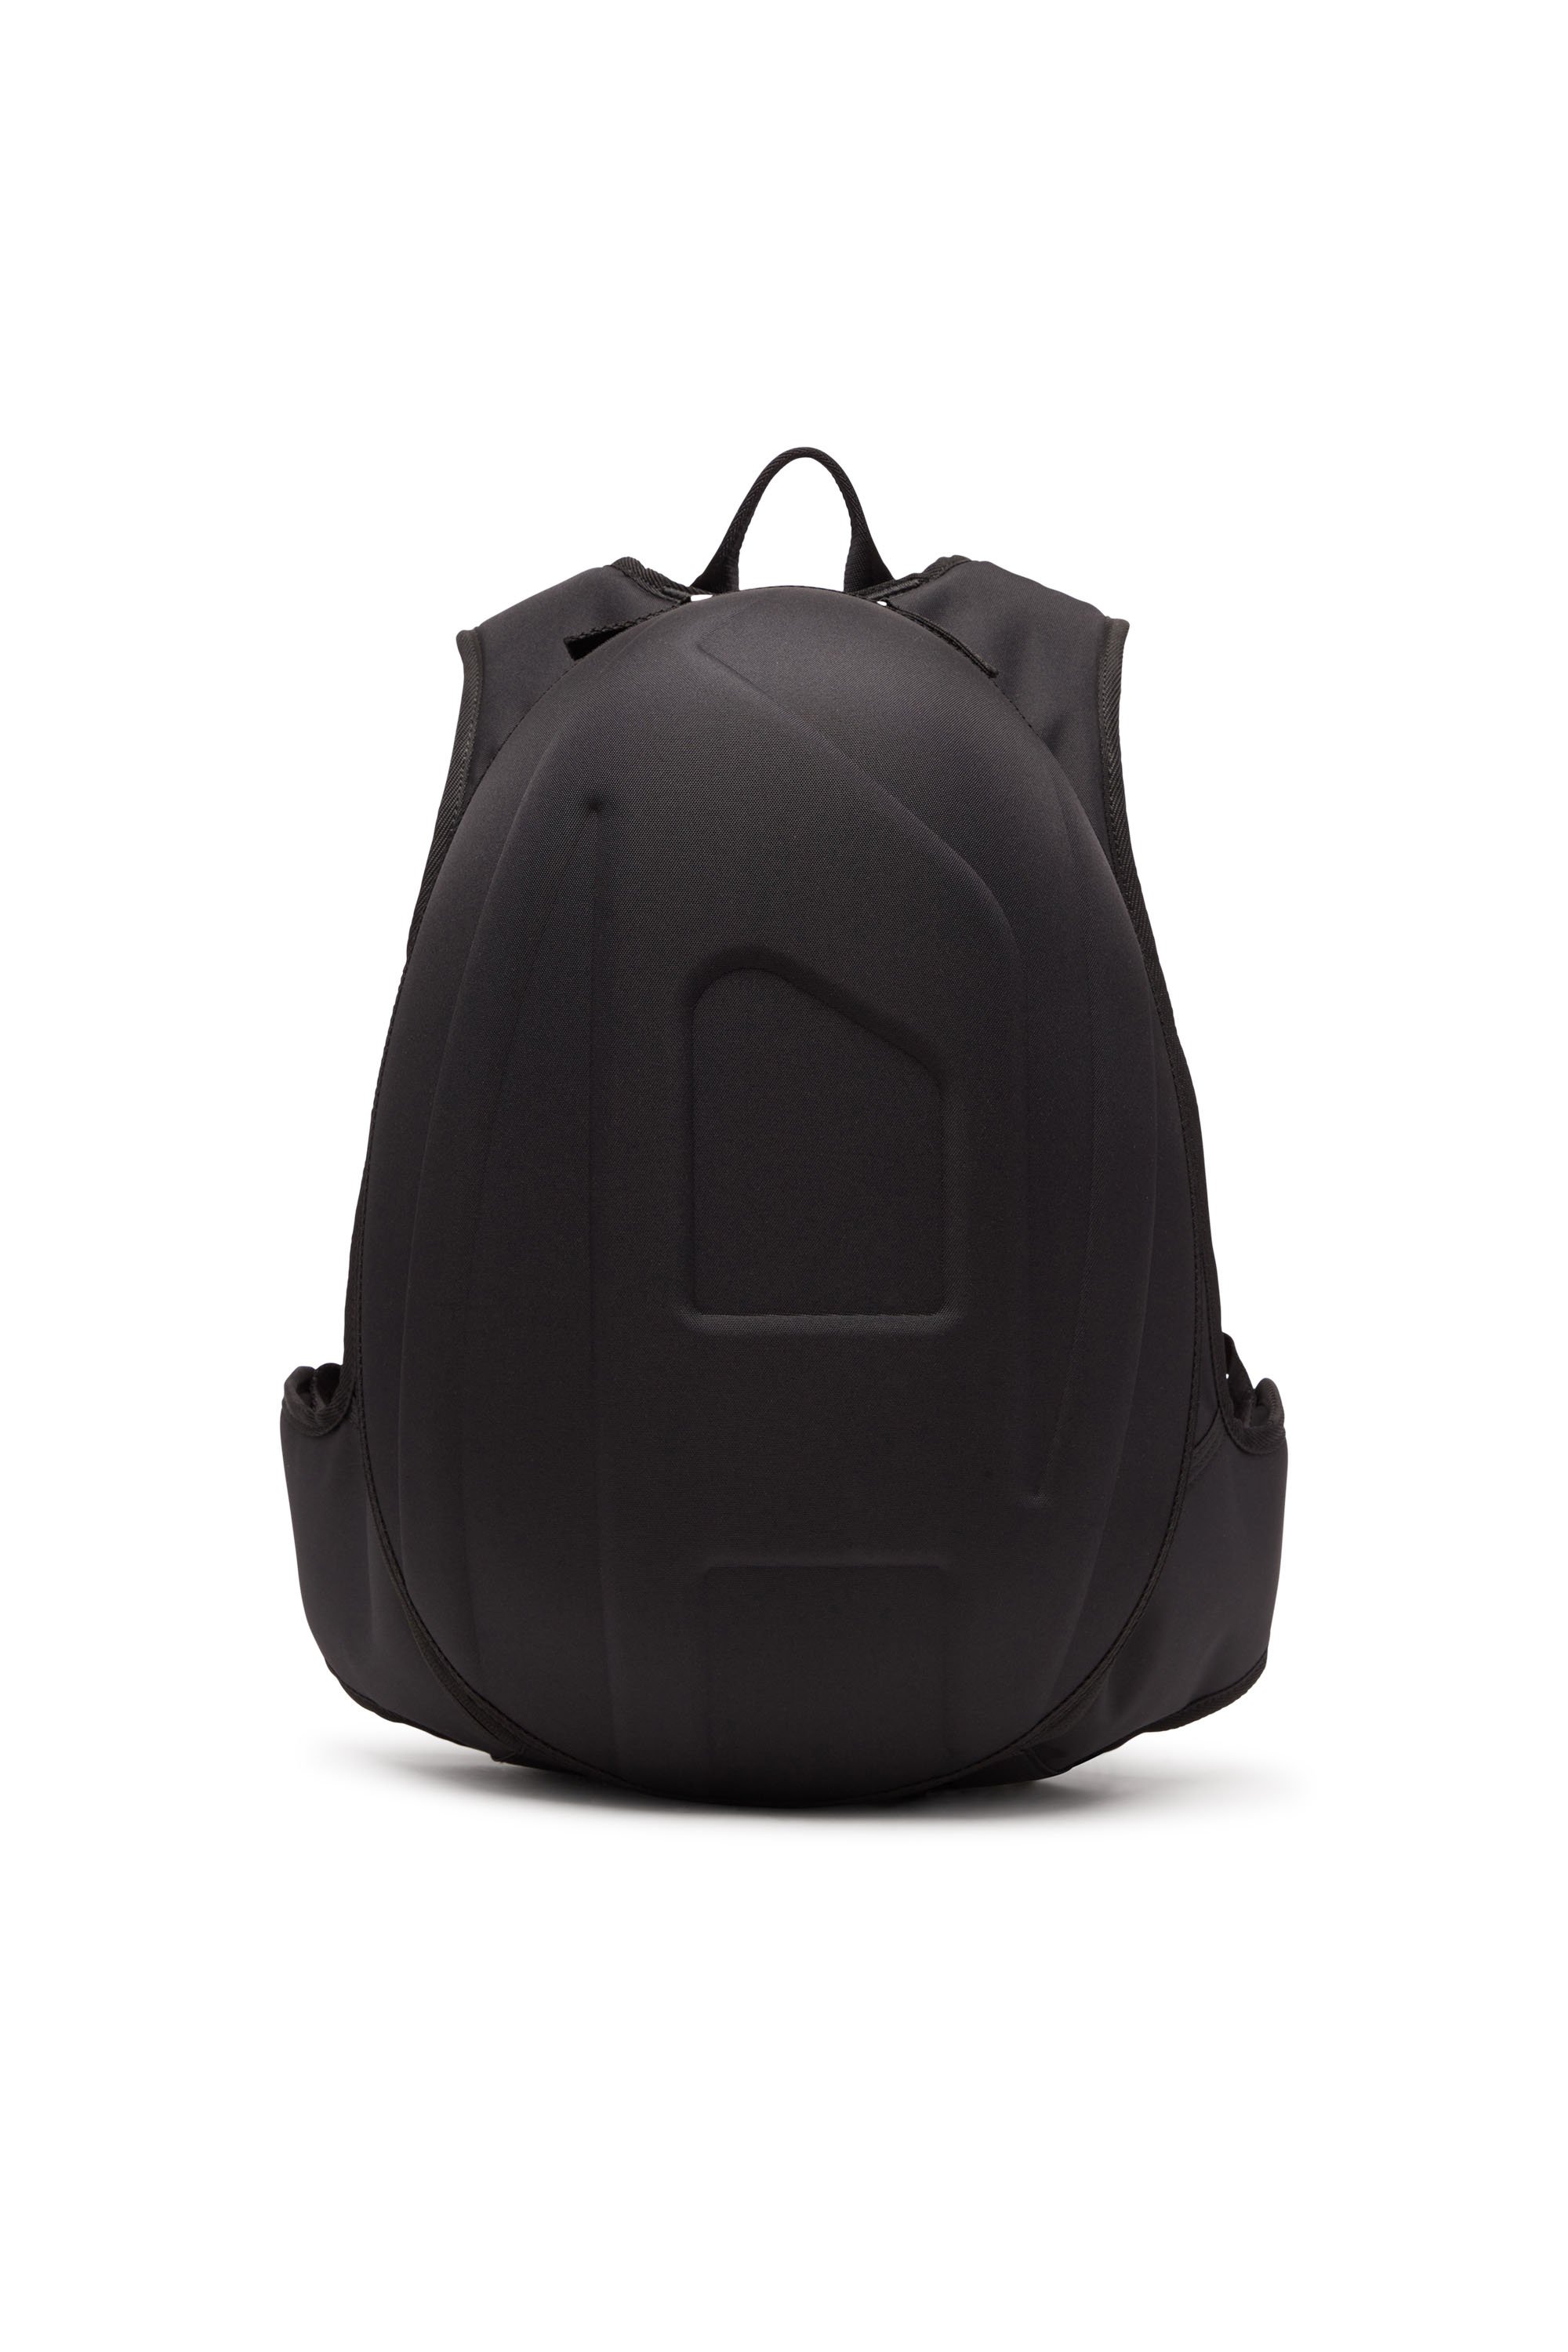 Diesel - 1DR-POD BACKPACK, Man 1DR-Pod Backpack - Hard shell backpack in Black - Image 1